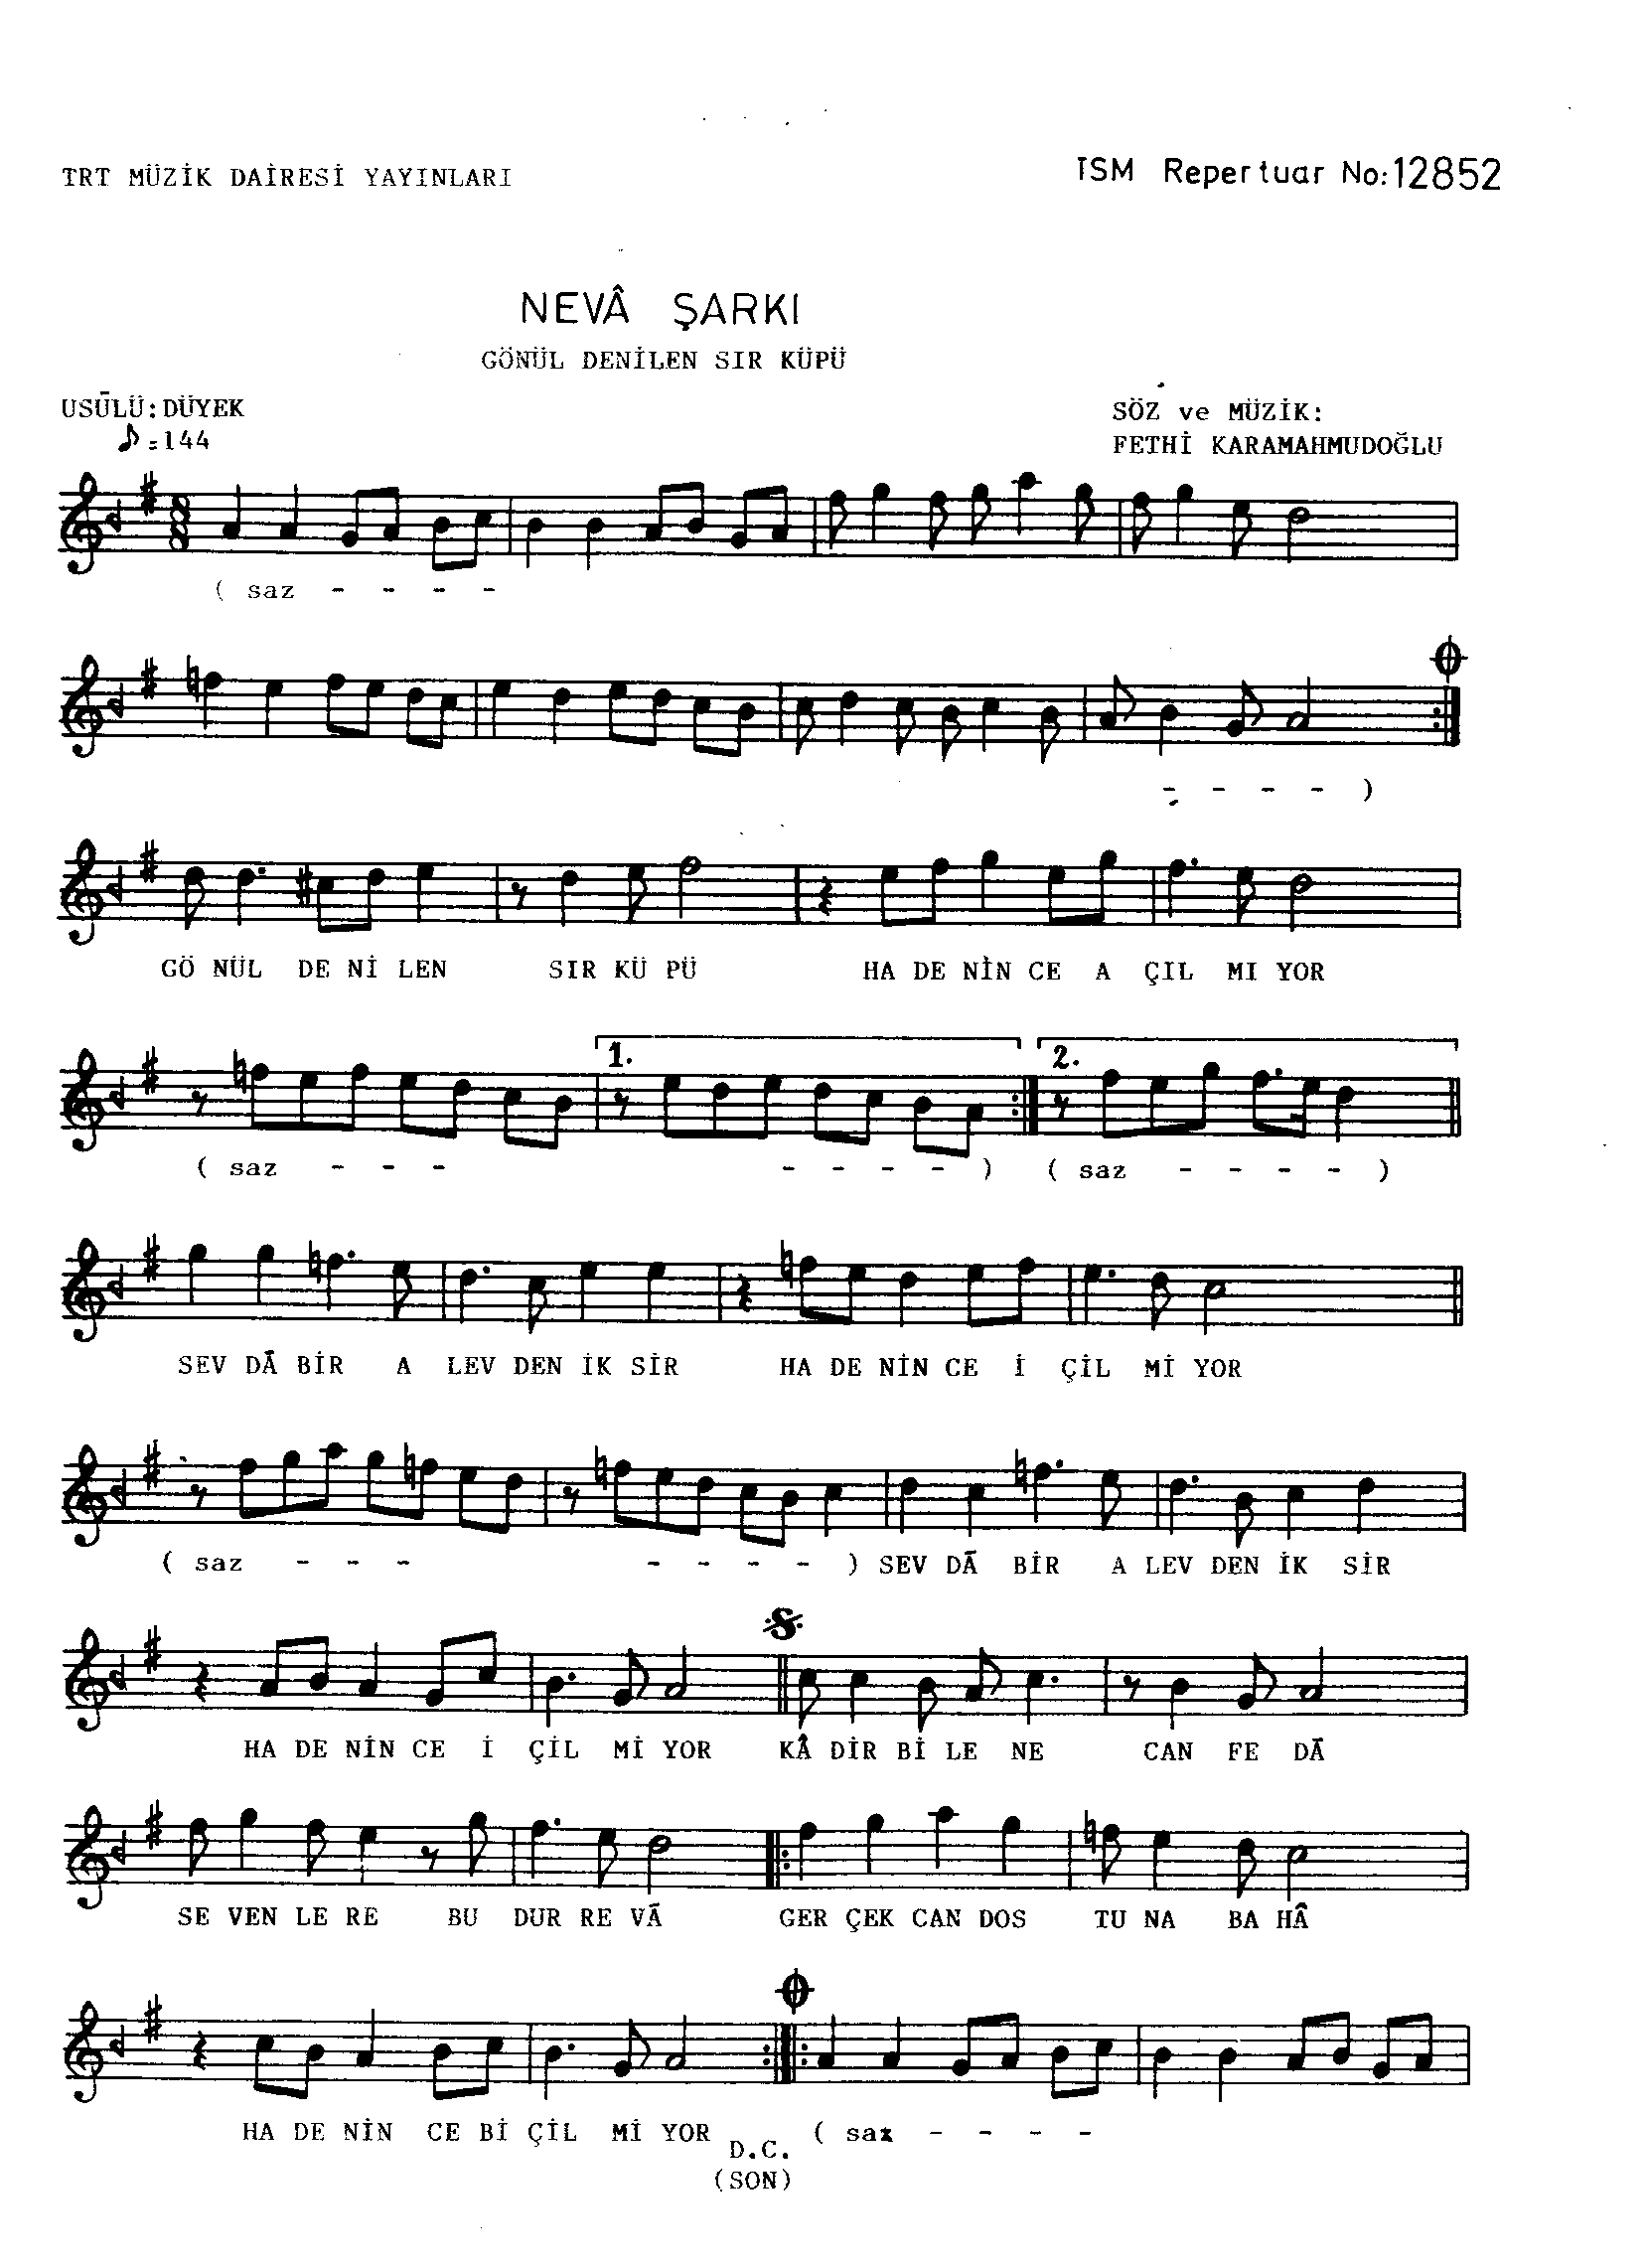 Neva - Şarkı - Fethi Karamahmudoğlu - Sayfa 1